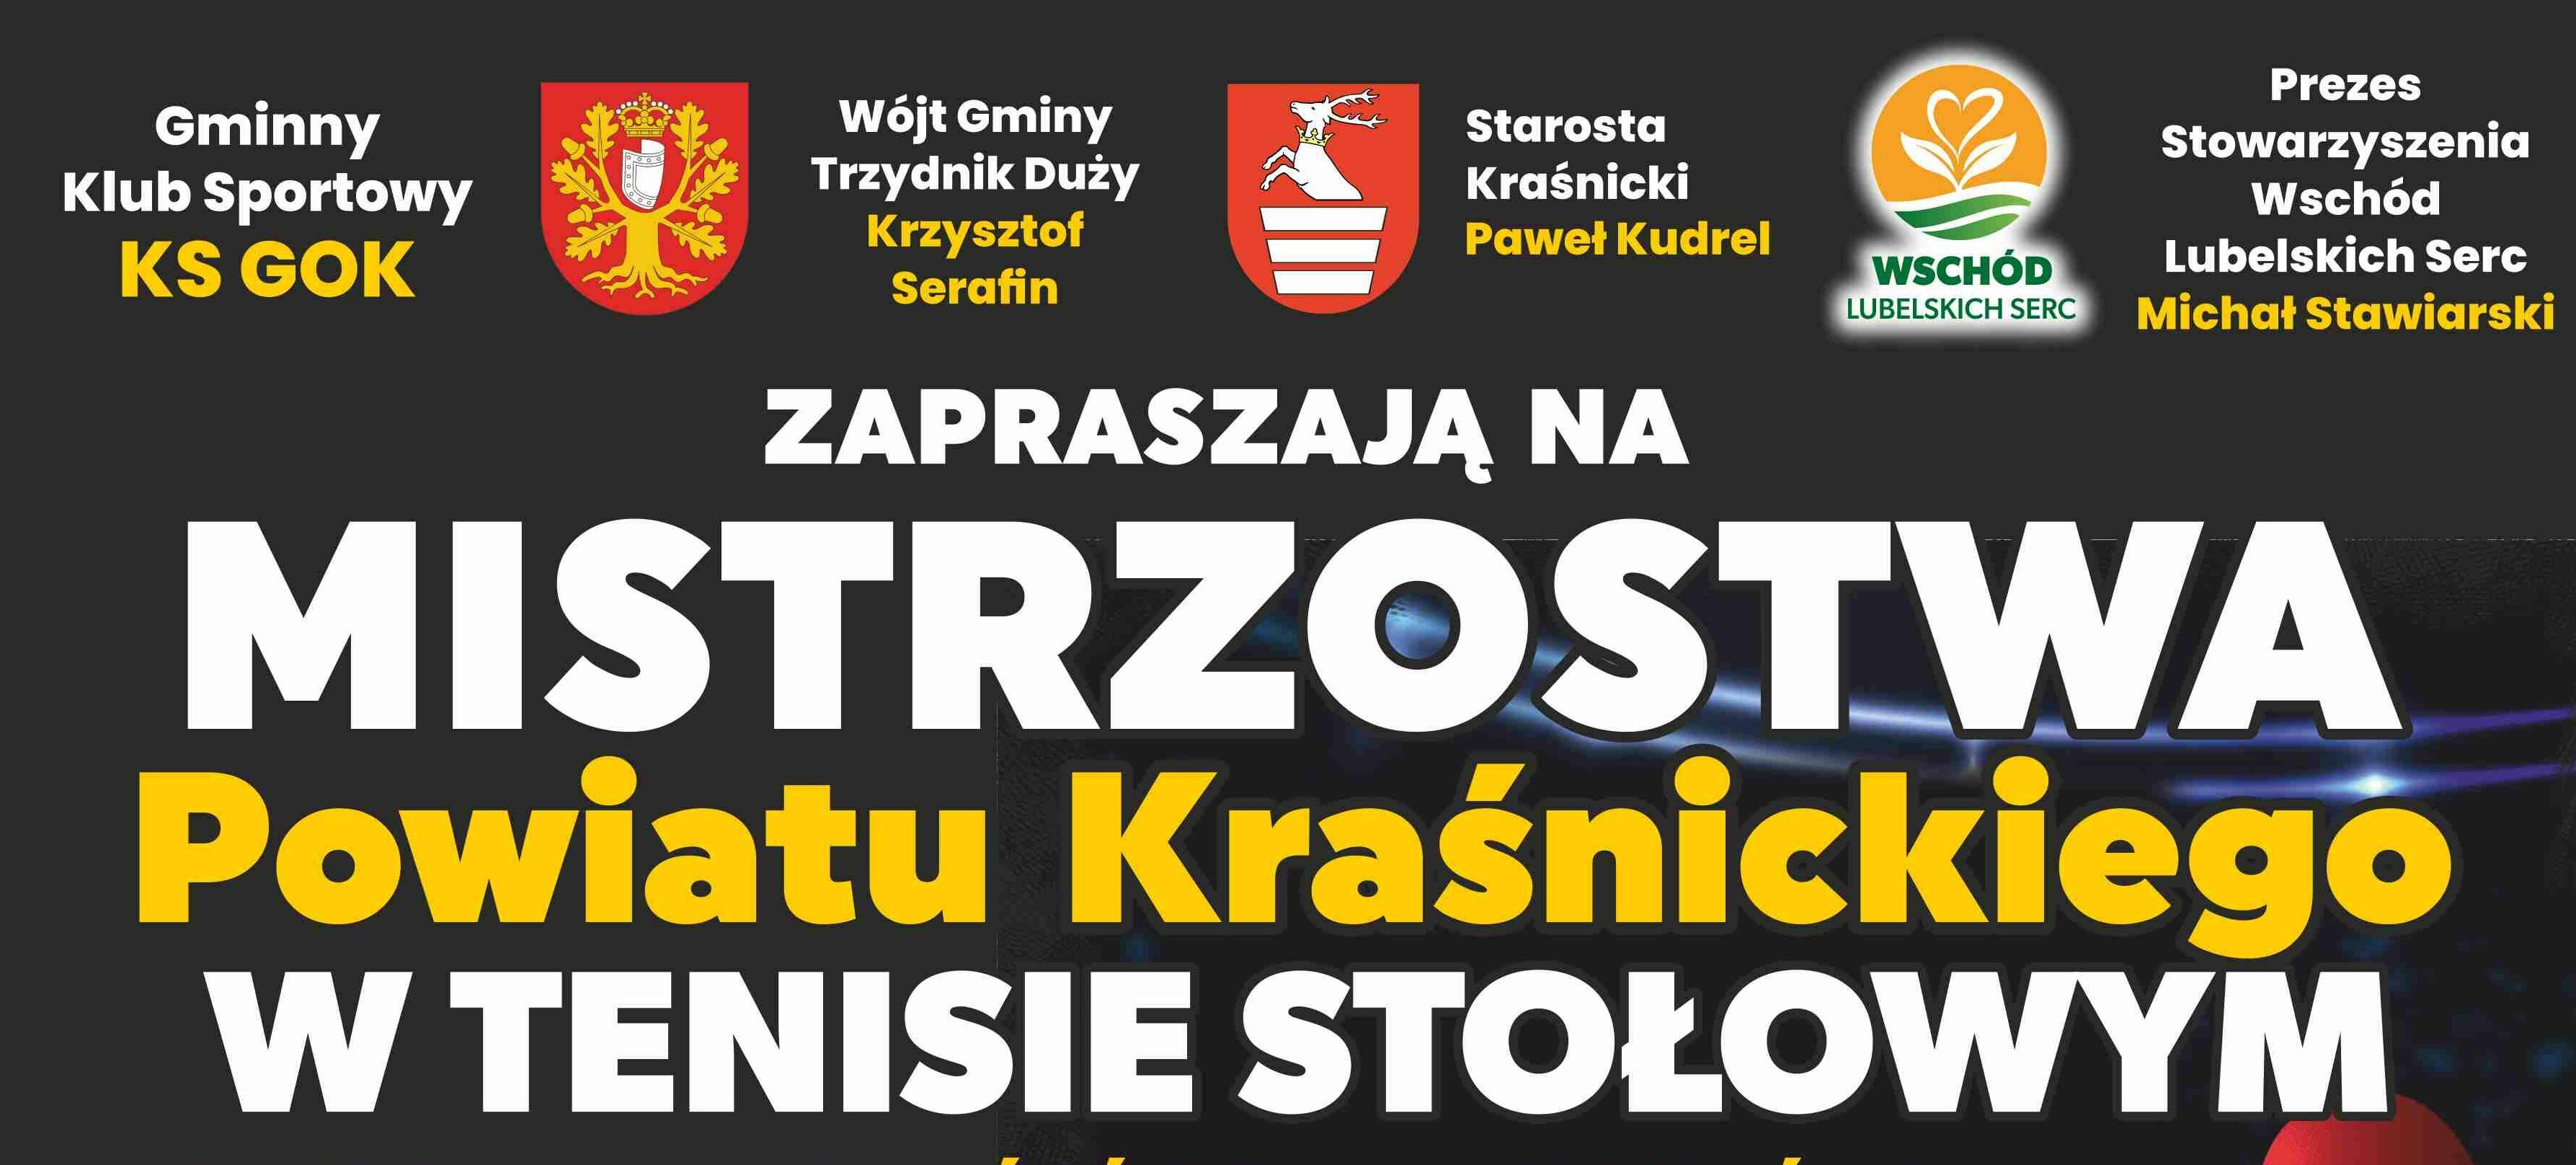 Baner zapraszający na Mistrzostwa Powiatu Kraśnickiego w Tenisie Stołowym z logo sponsorów i organizatorów.